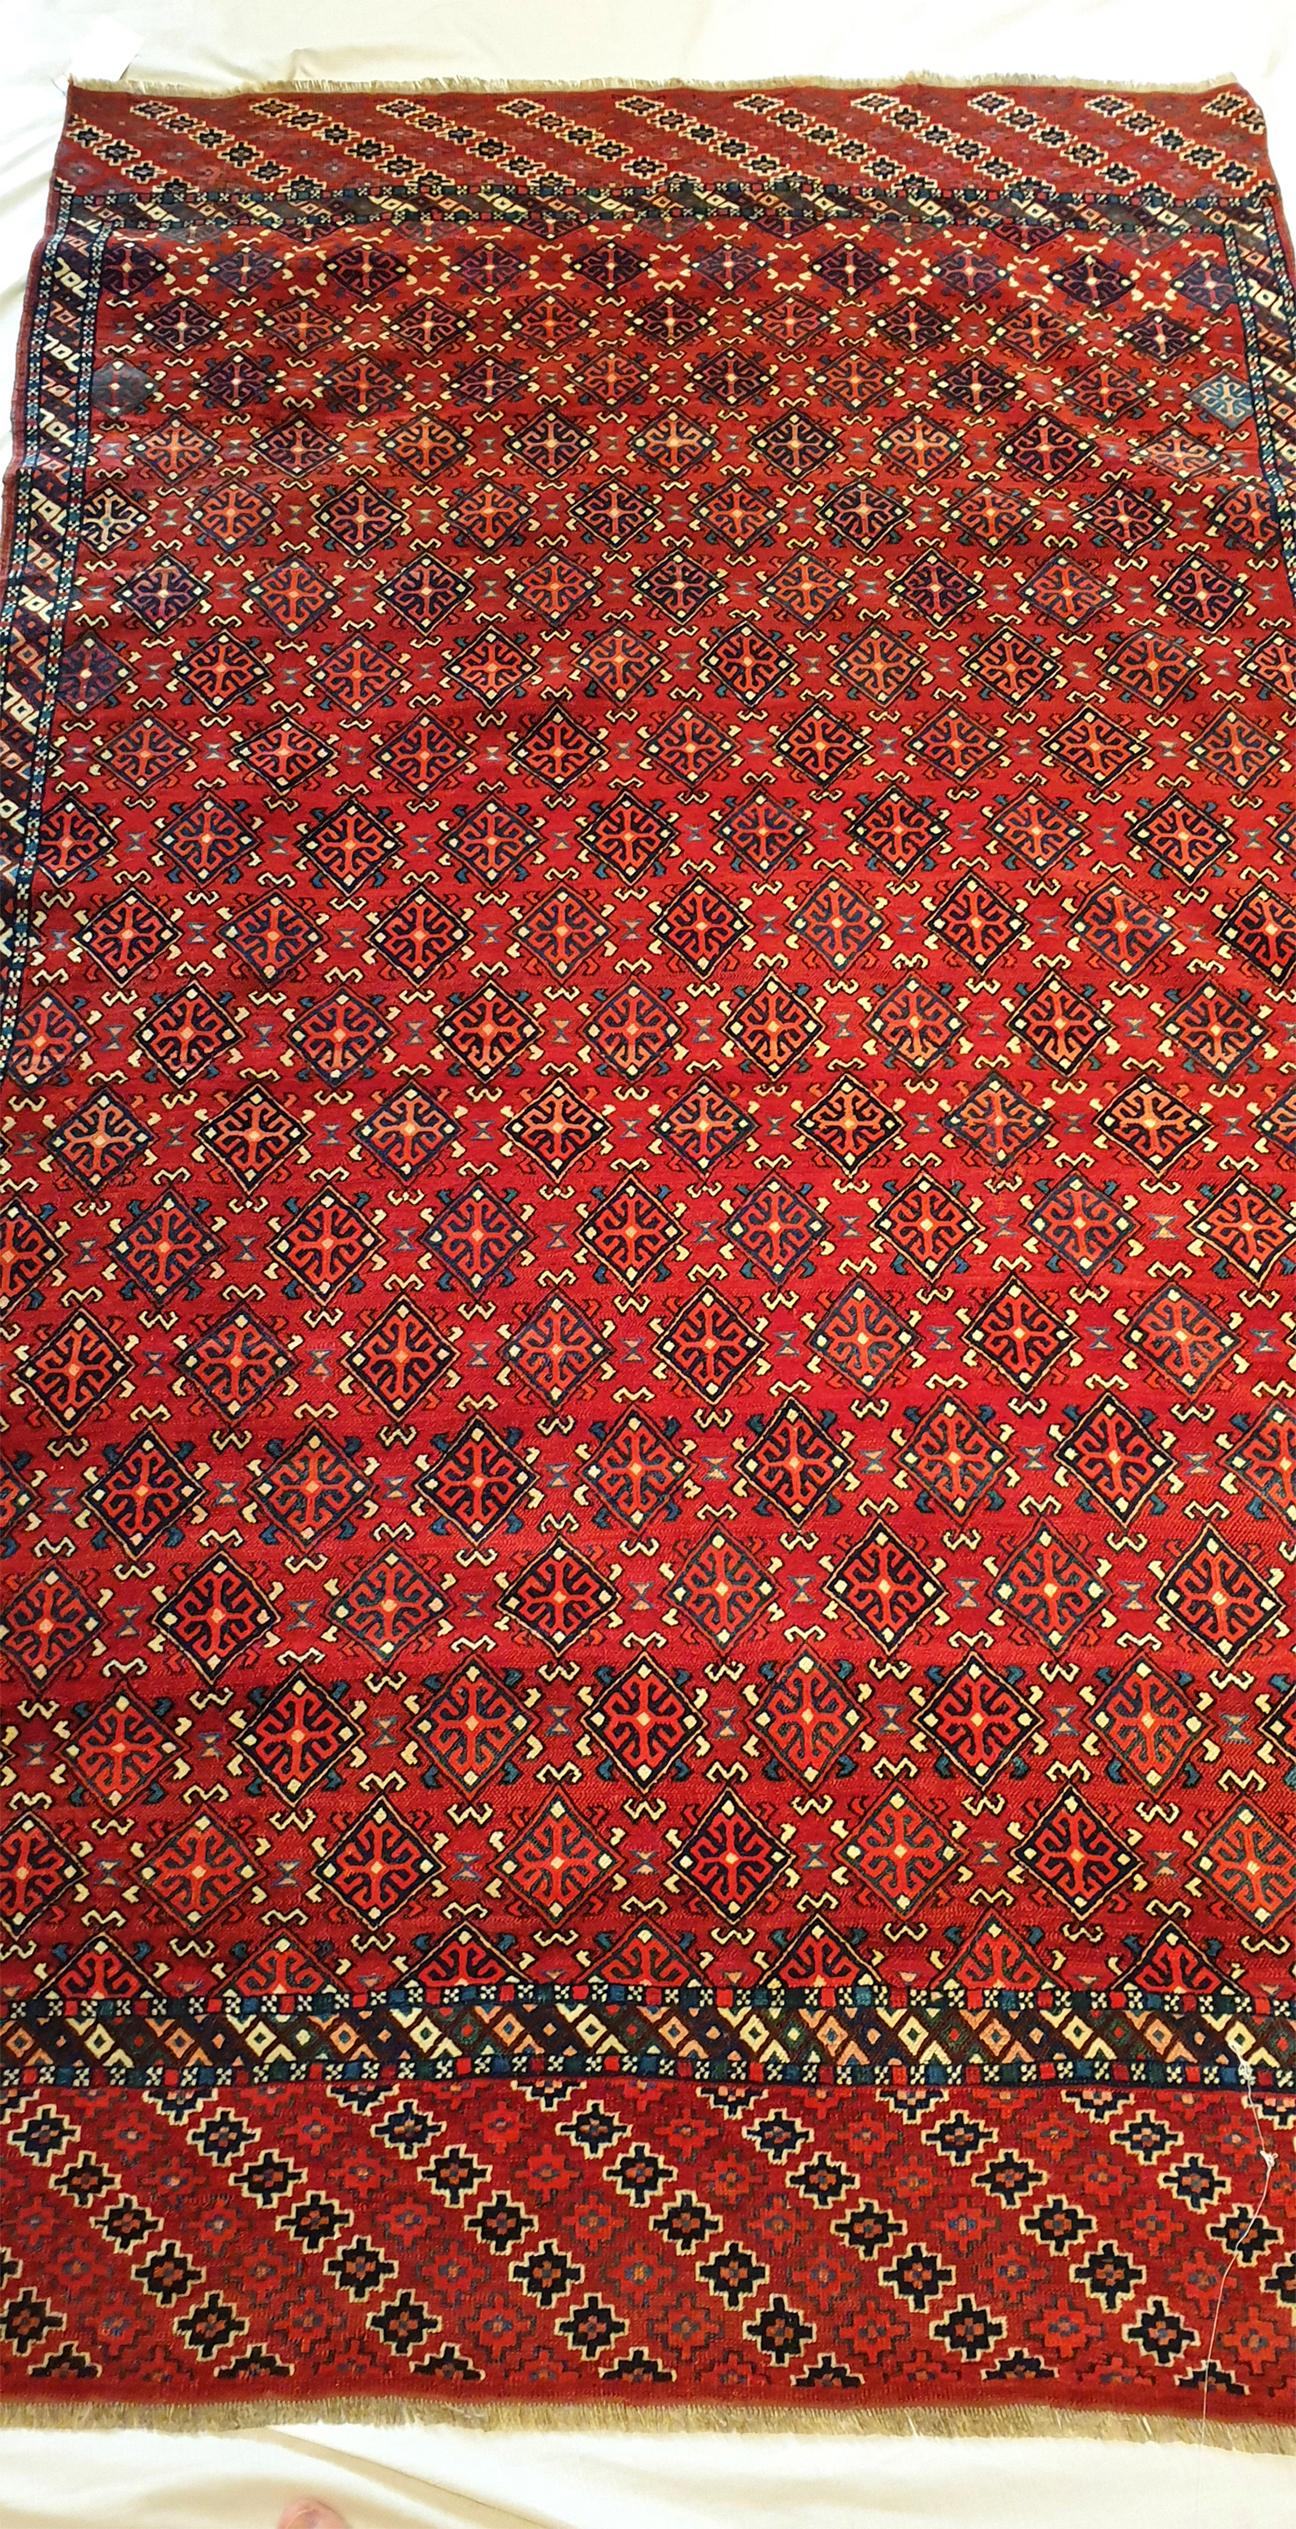 N° 729, tapis noué à la main dans une usine turkmène du 19e siècle.
Haute qualité, beaux graphismes et finesse remarquable.
Parfait état de conservation.

Dimensions : 205 x 125 cm.